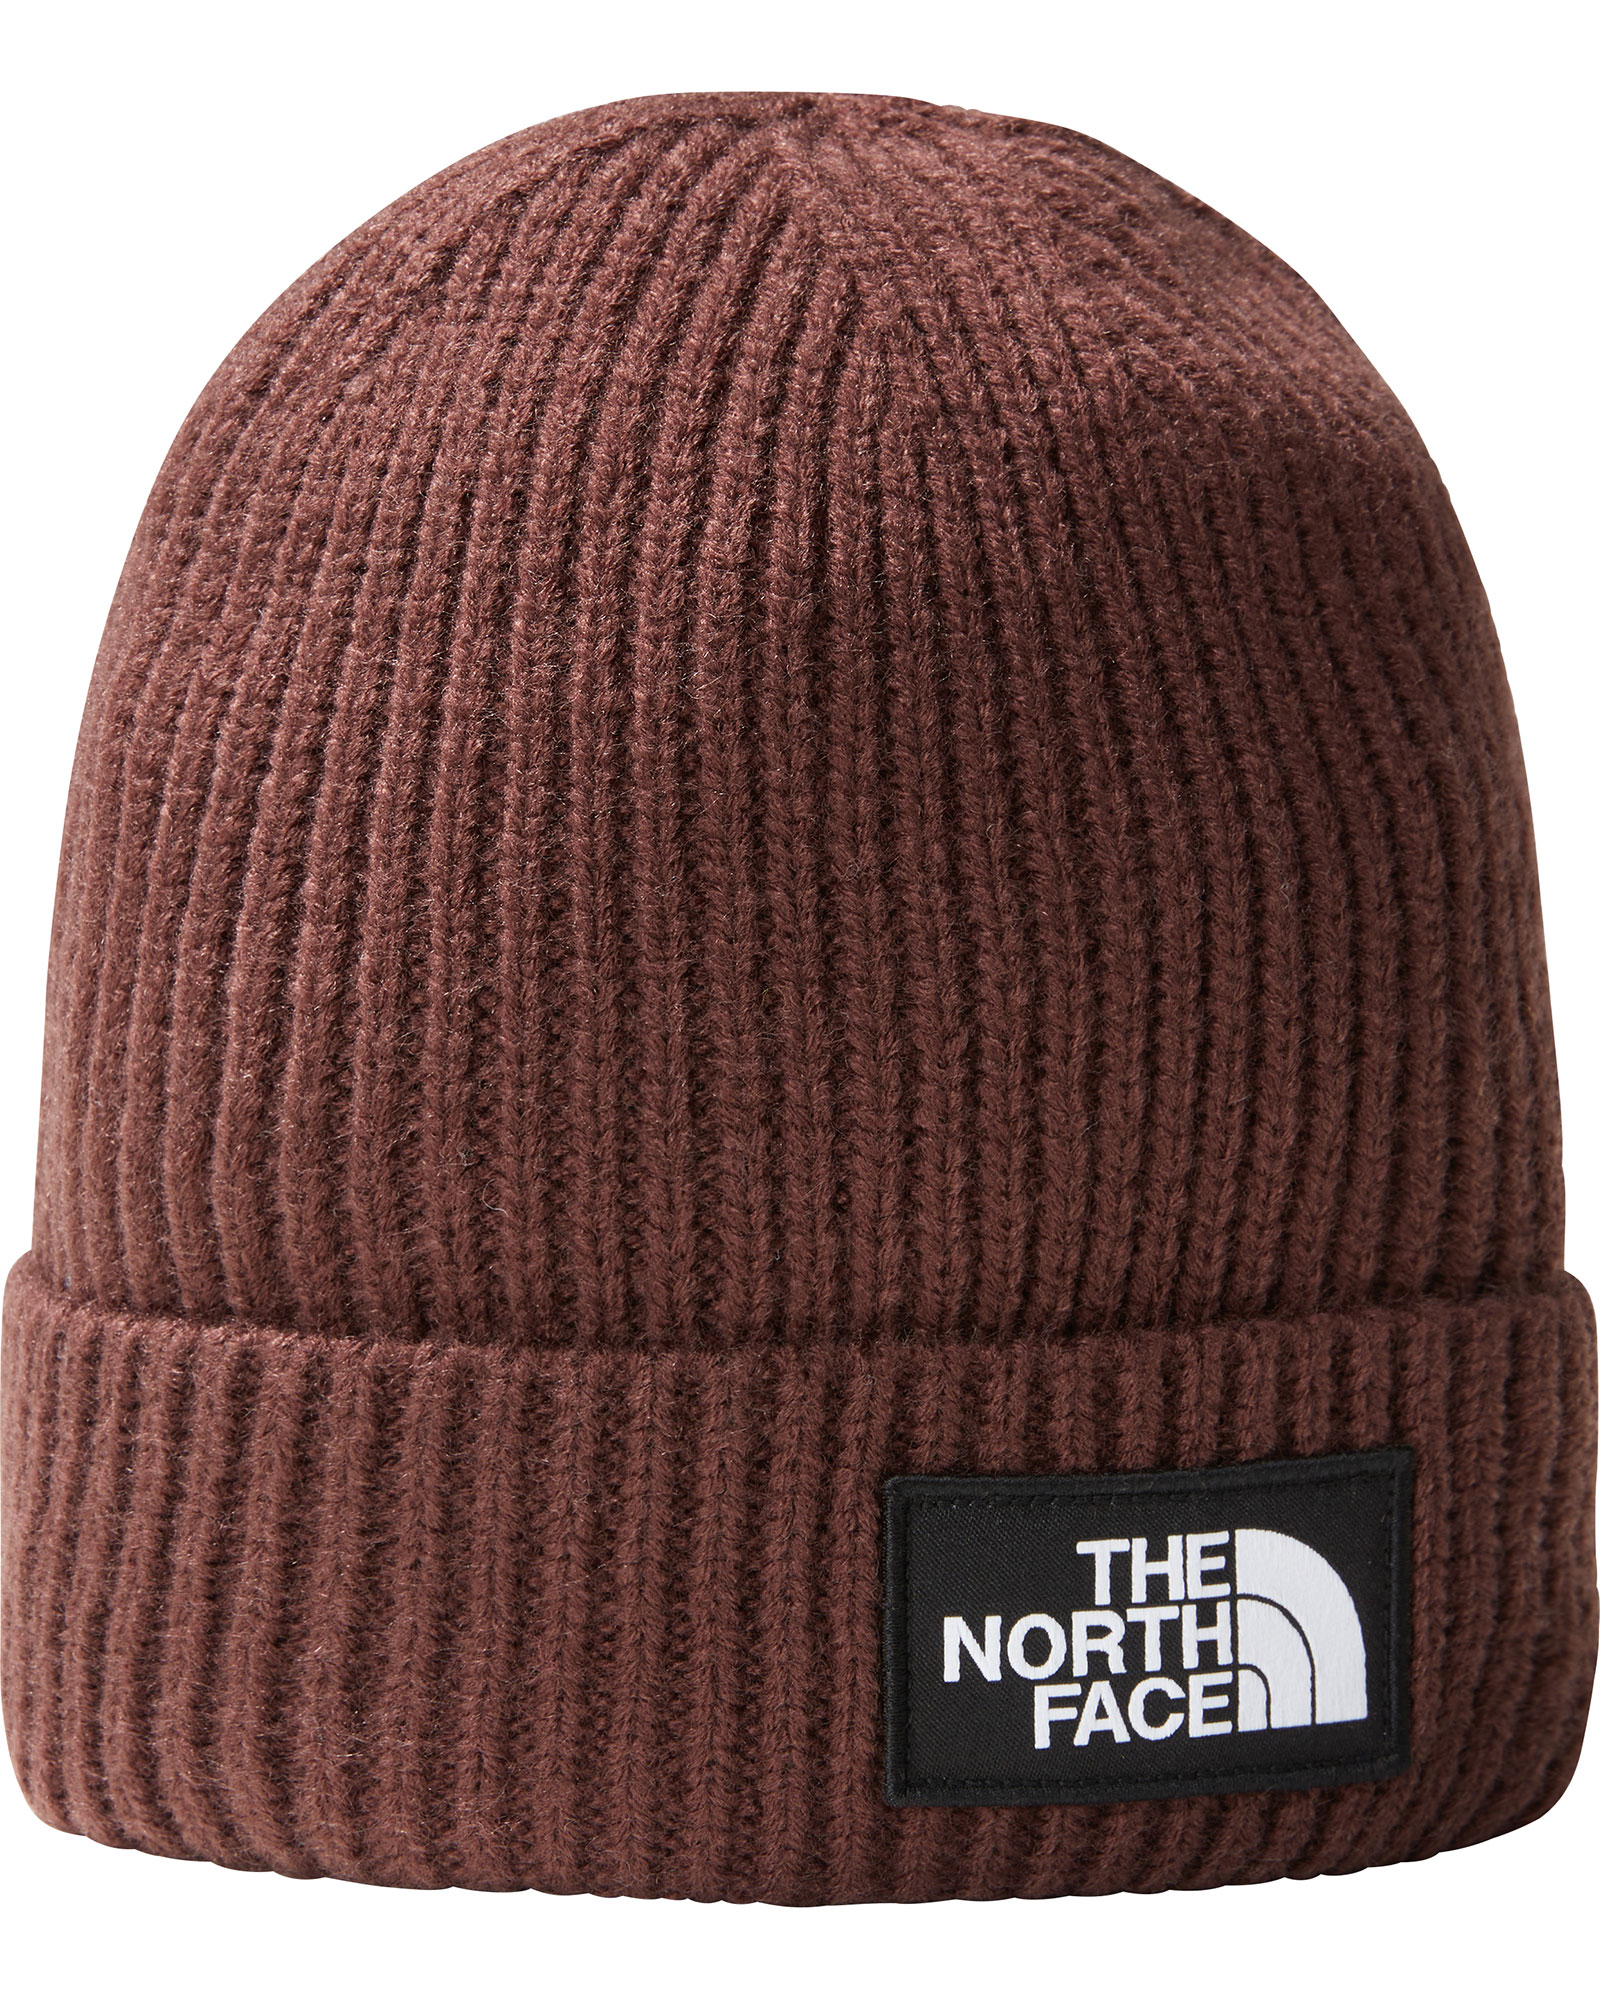 The North Face Logo Box Cuffed Beanie - Coal Brown